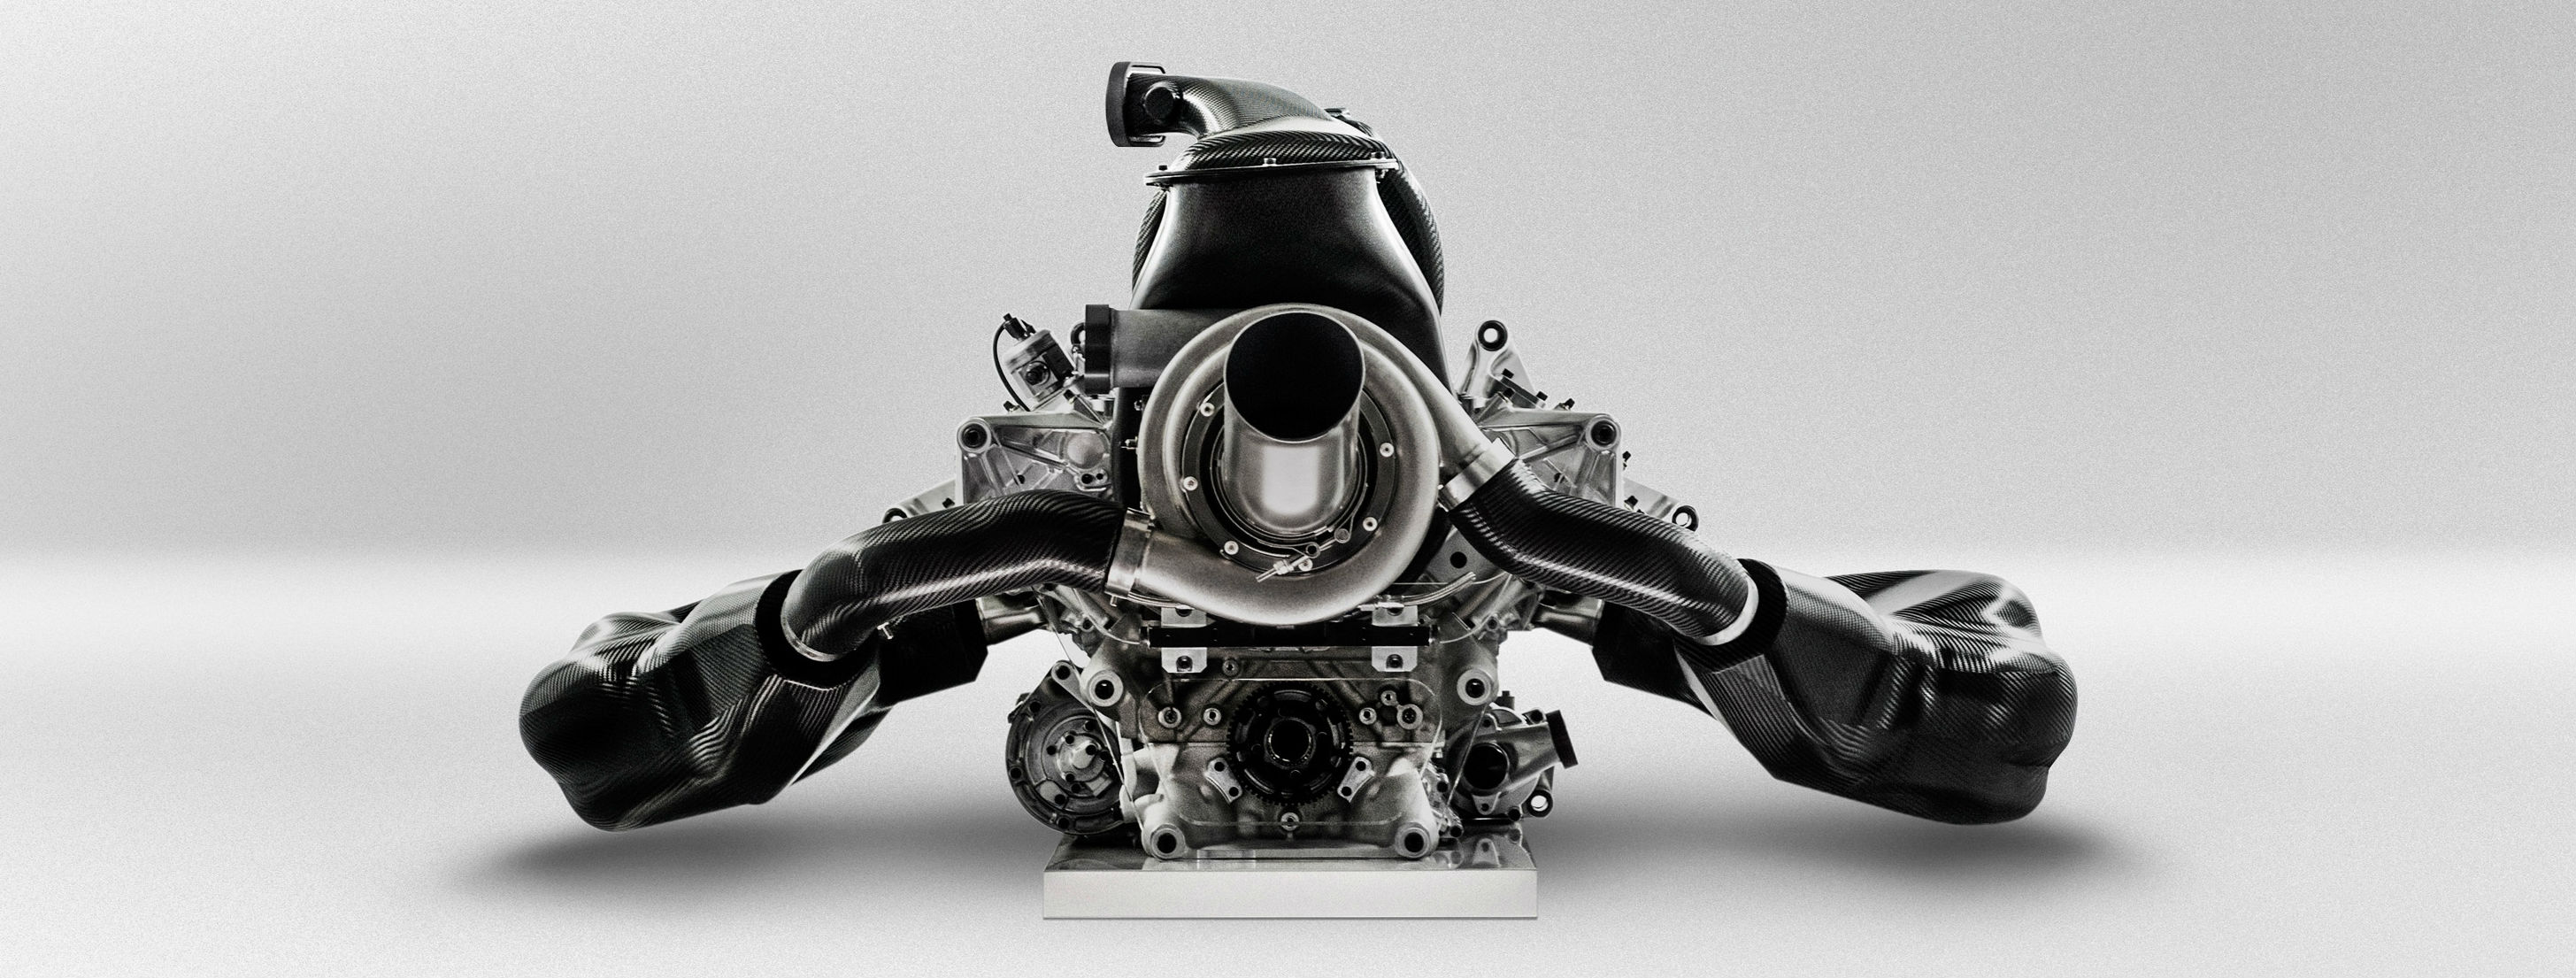 De Formule 1 motor van Renault